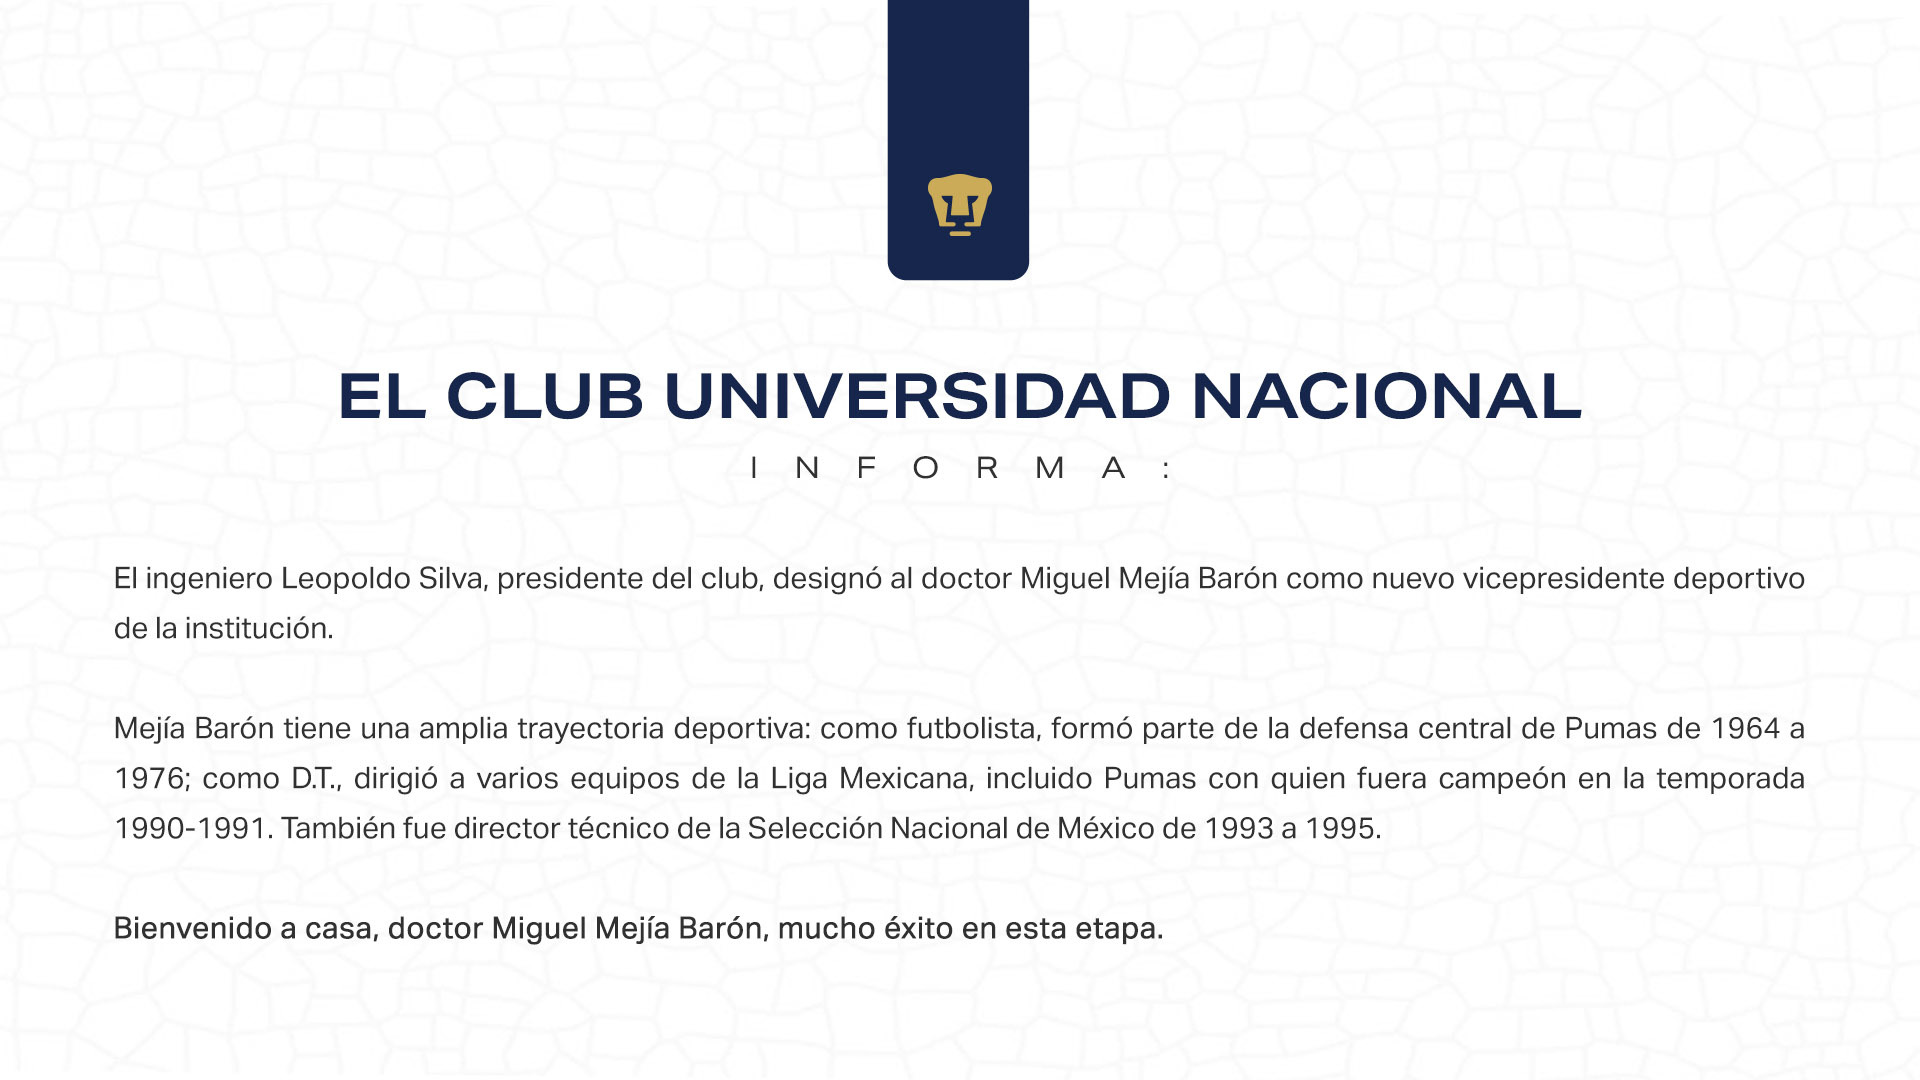 Miguel Mejía Barón es el nuevo vicepresidente deportivo de los Pumas